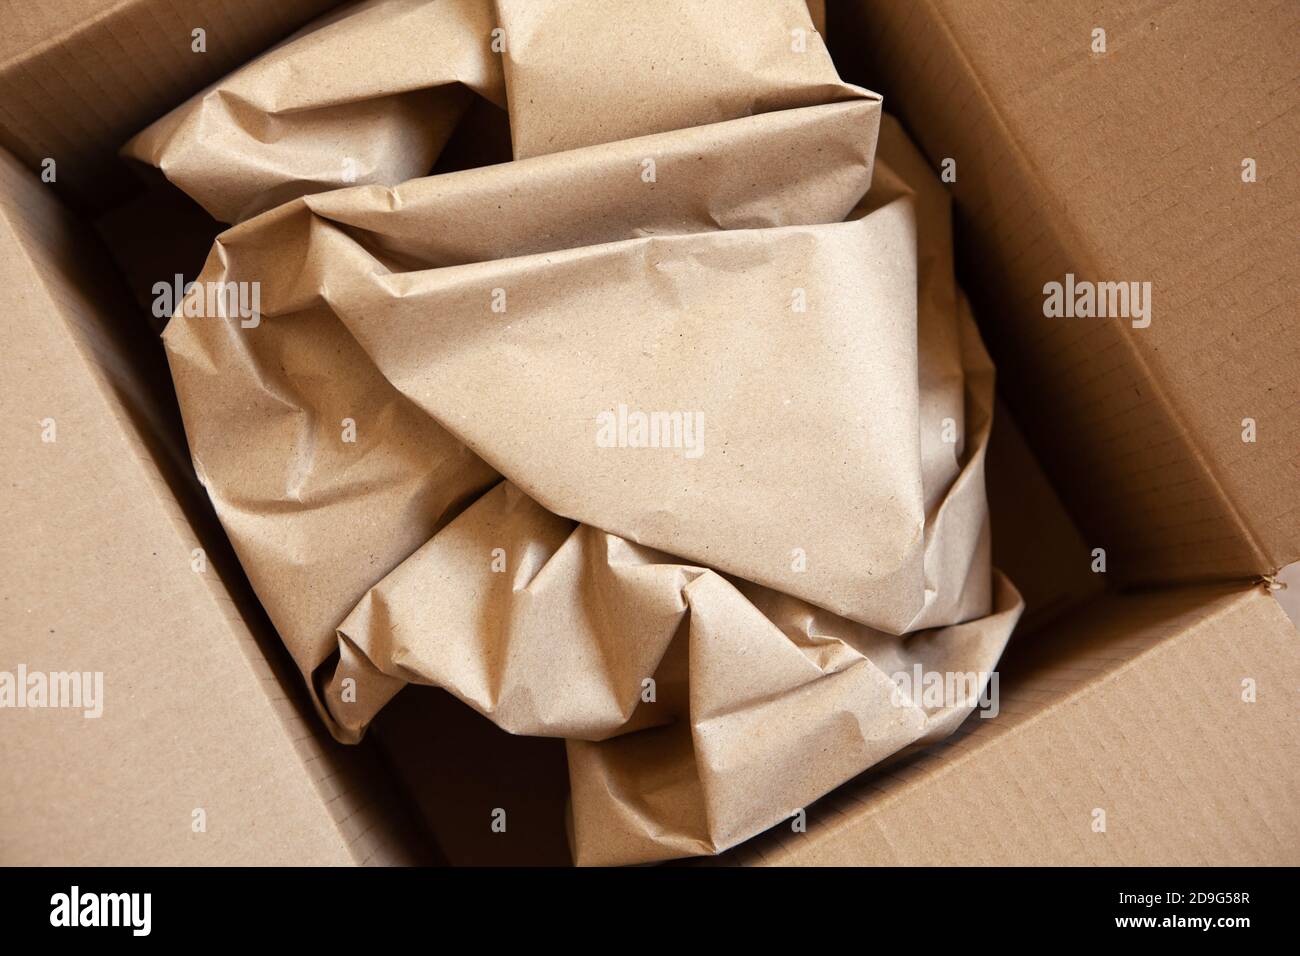 Emballage froissé papier brun en ouvert après livraison boîte carton.  Horizontale. Livraison, écologie, sans plastique, concept de dépassement de  ressources. Plat Photo Stock - Alamy